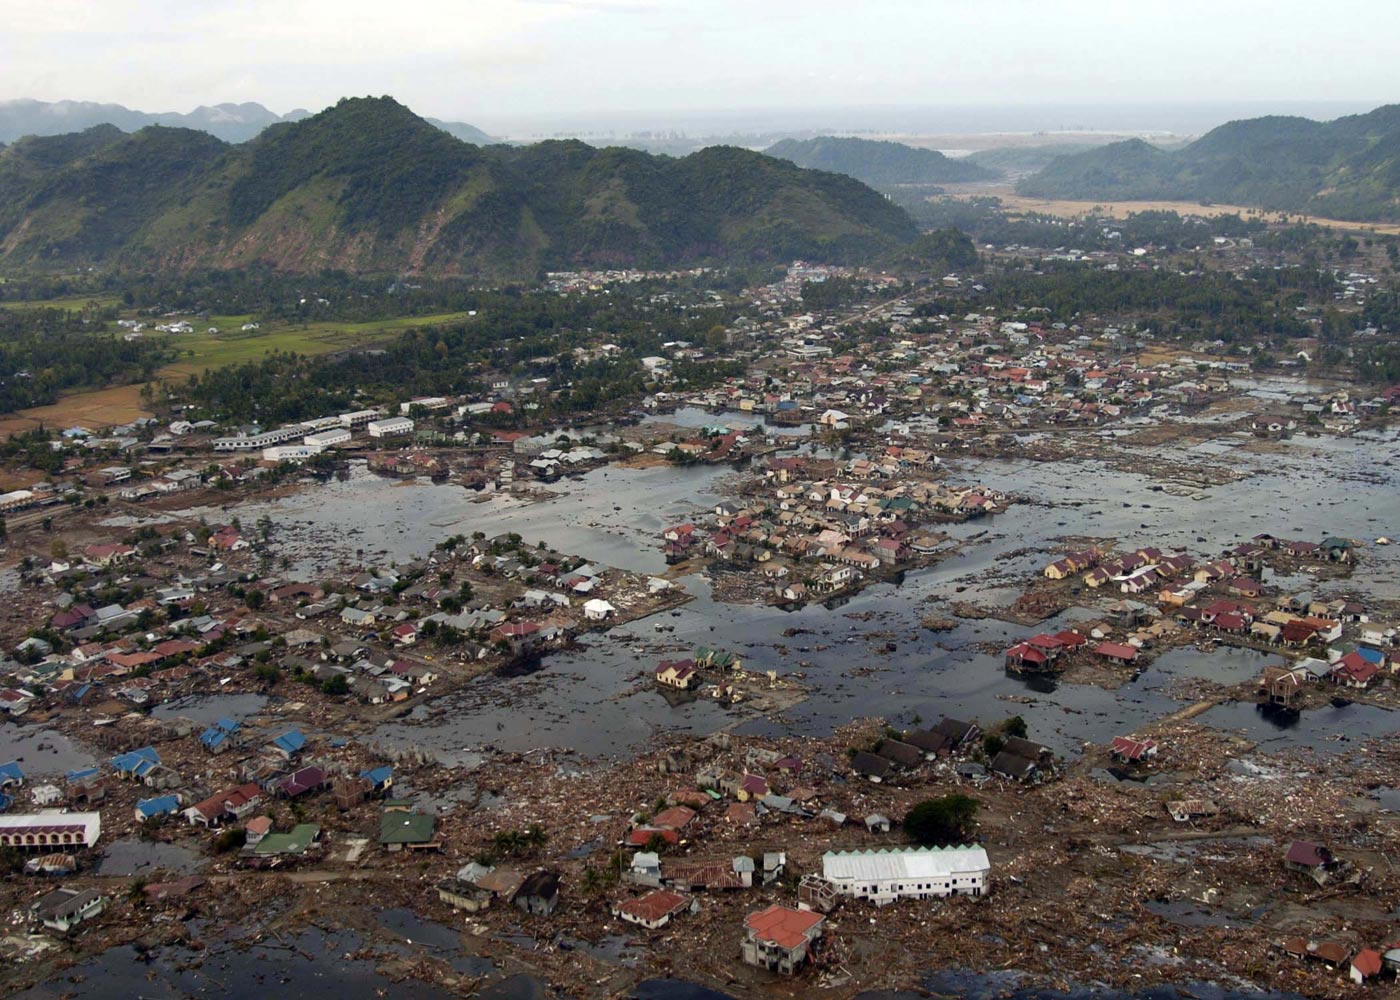 Tsunami In Sumatra